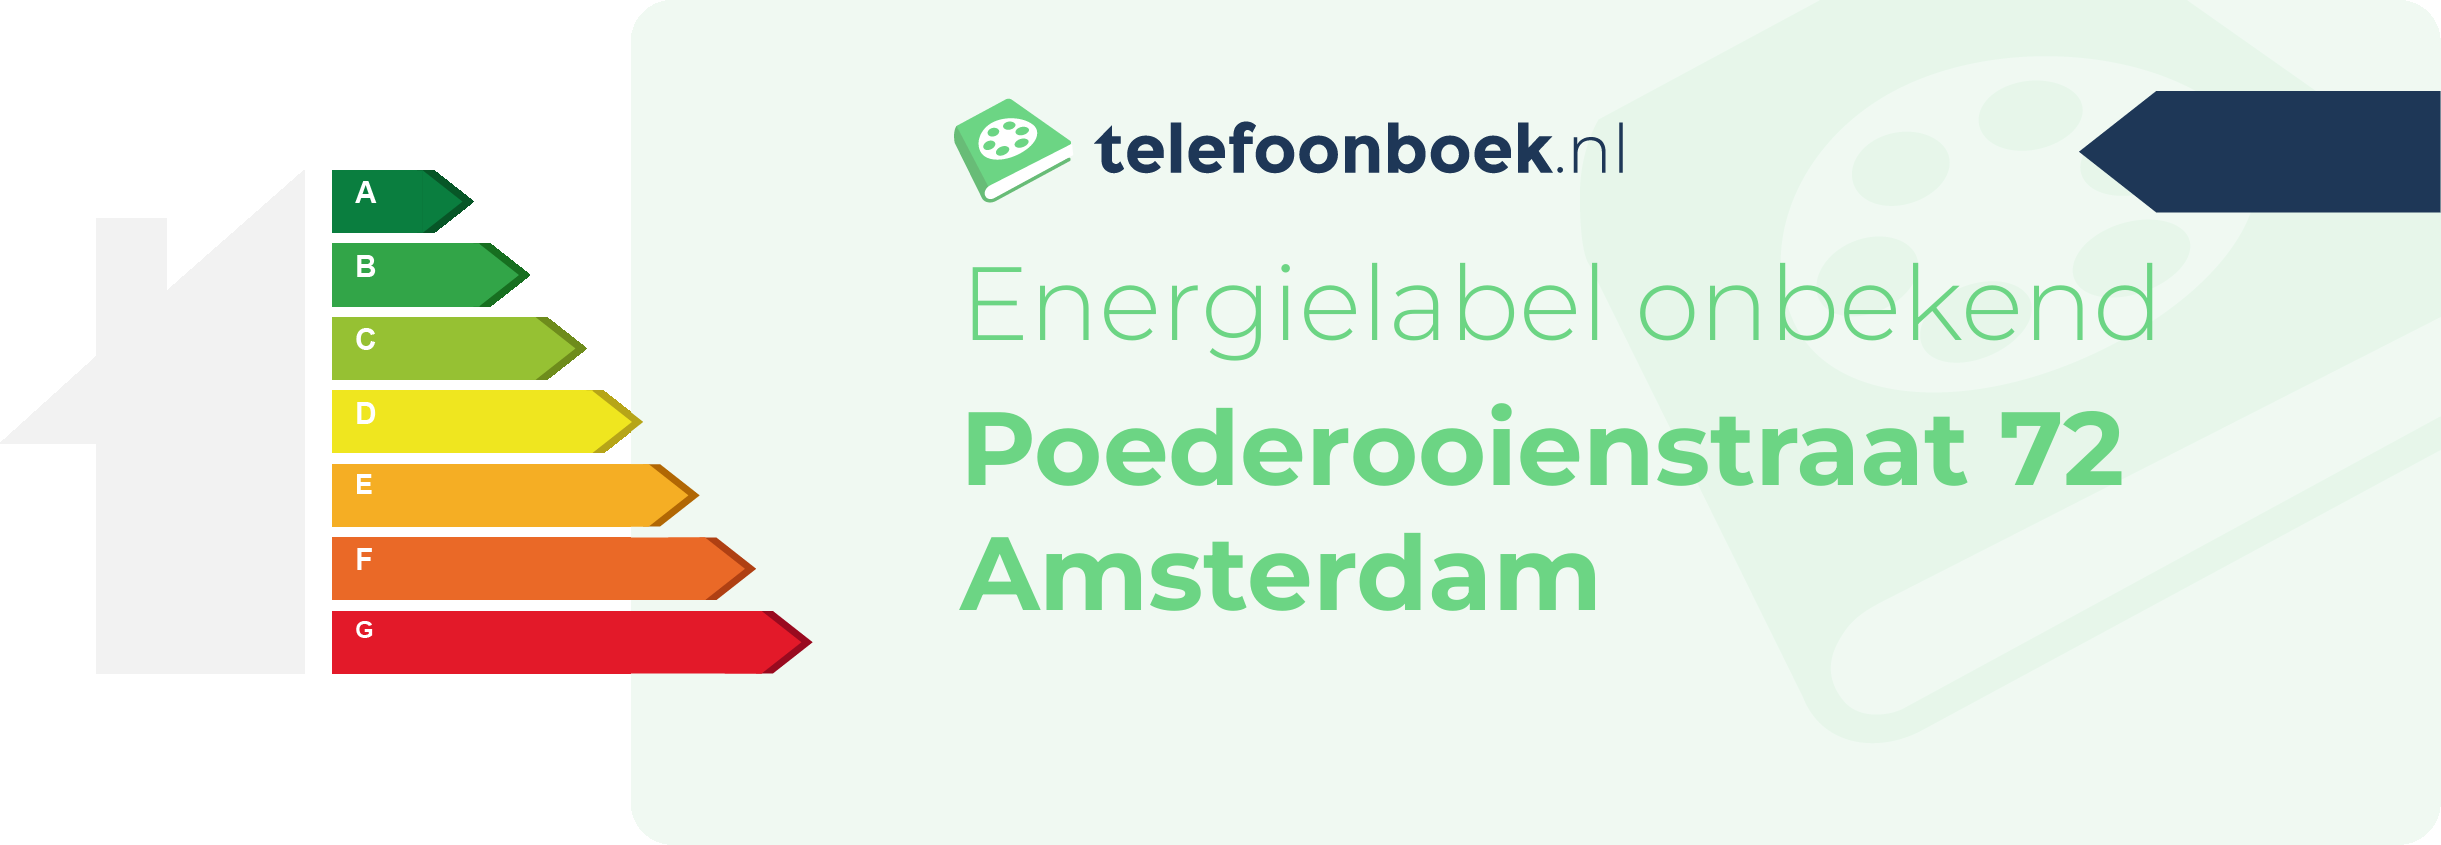 Energielabel Poederooienstraat 72 Amsterdam